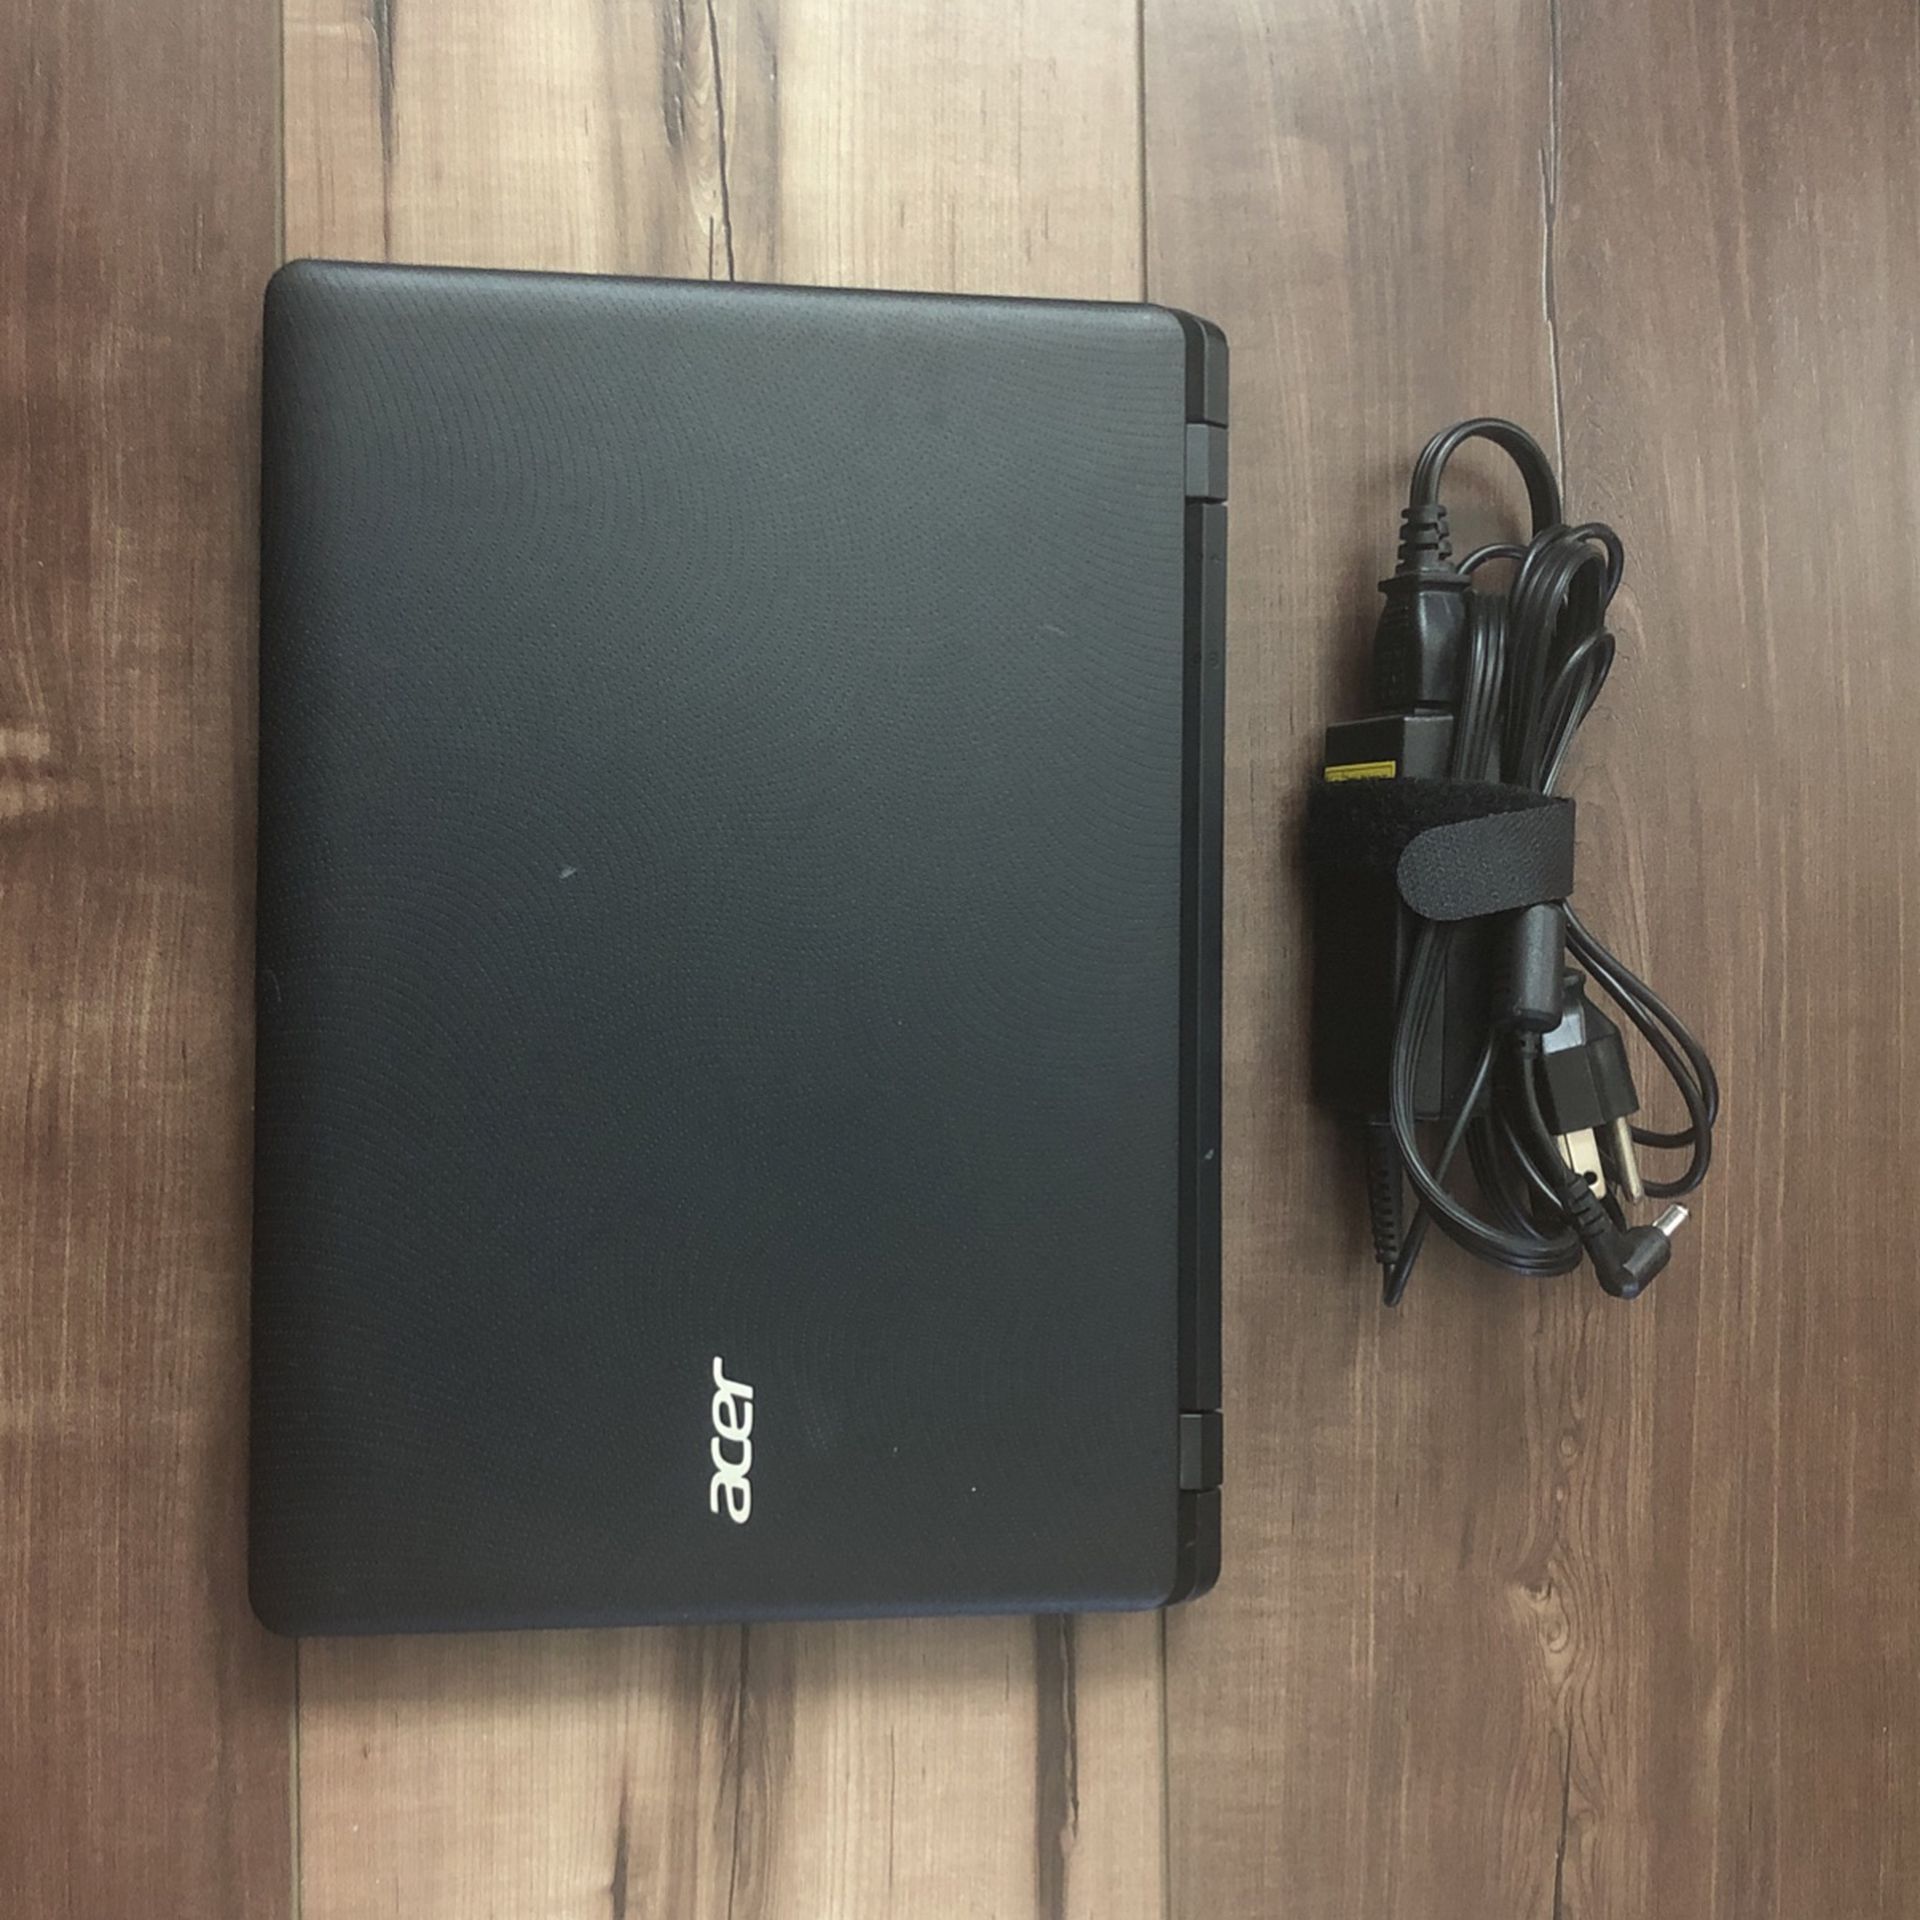 Acer Laptop (won’t Start)